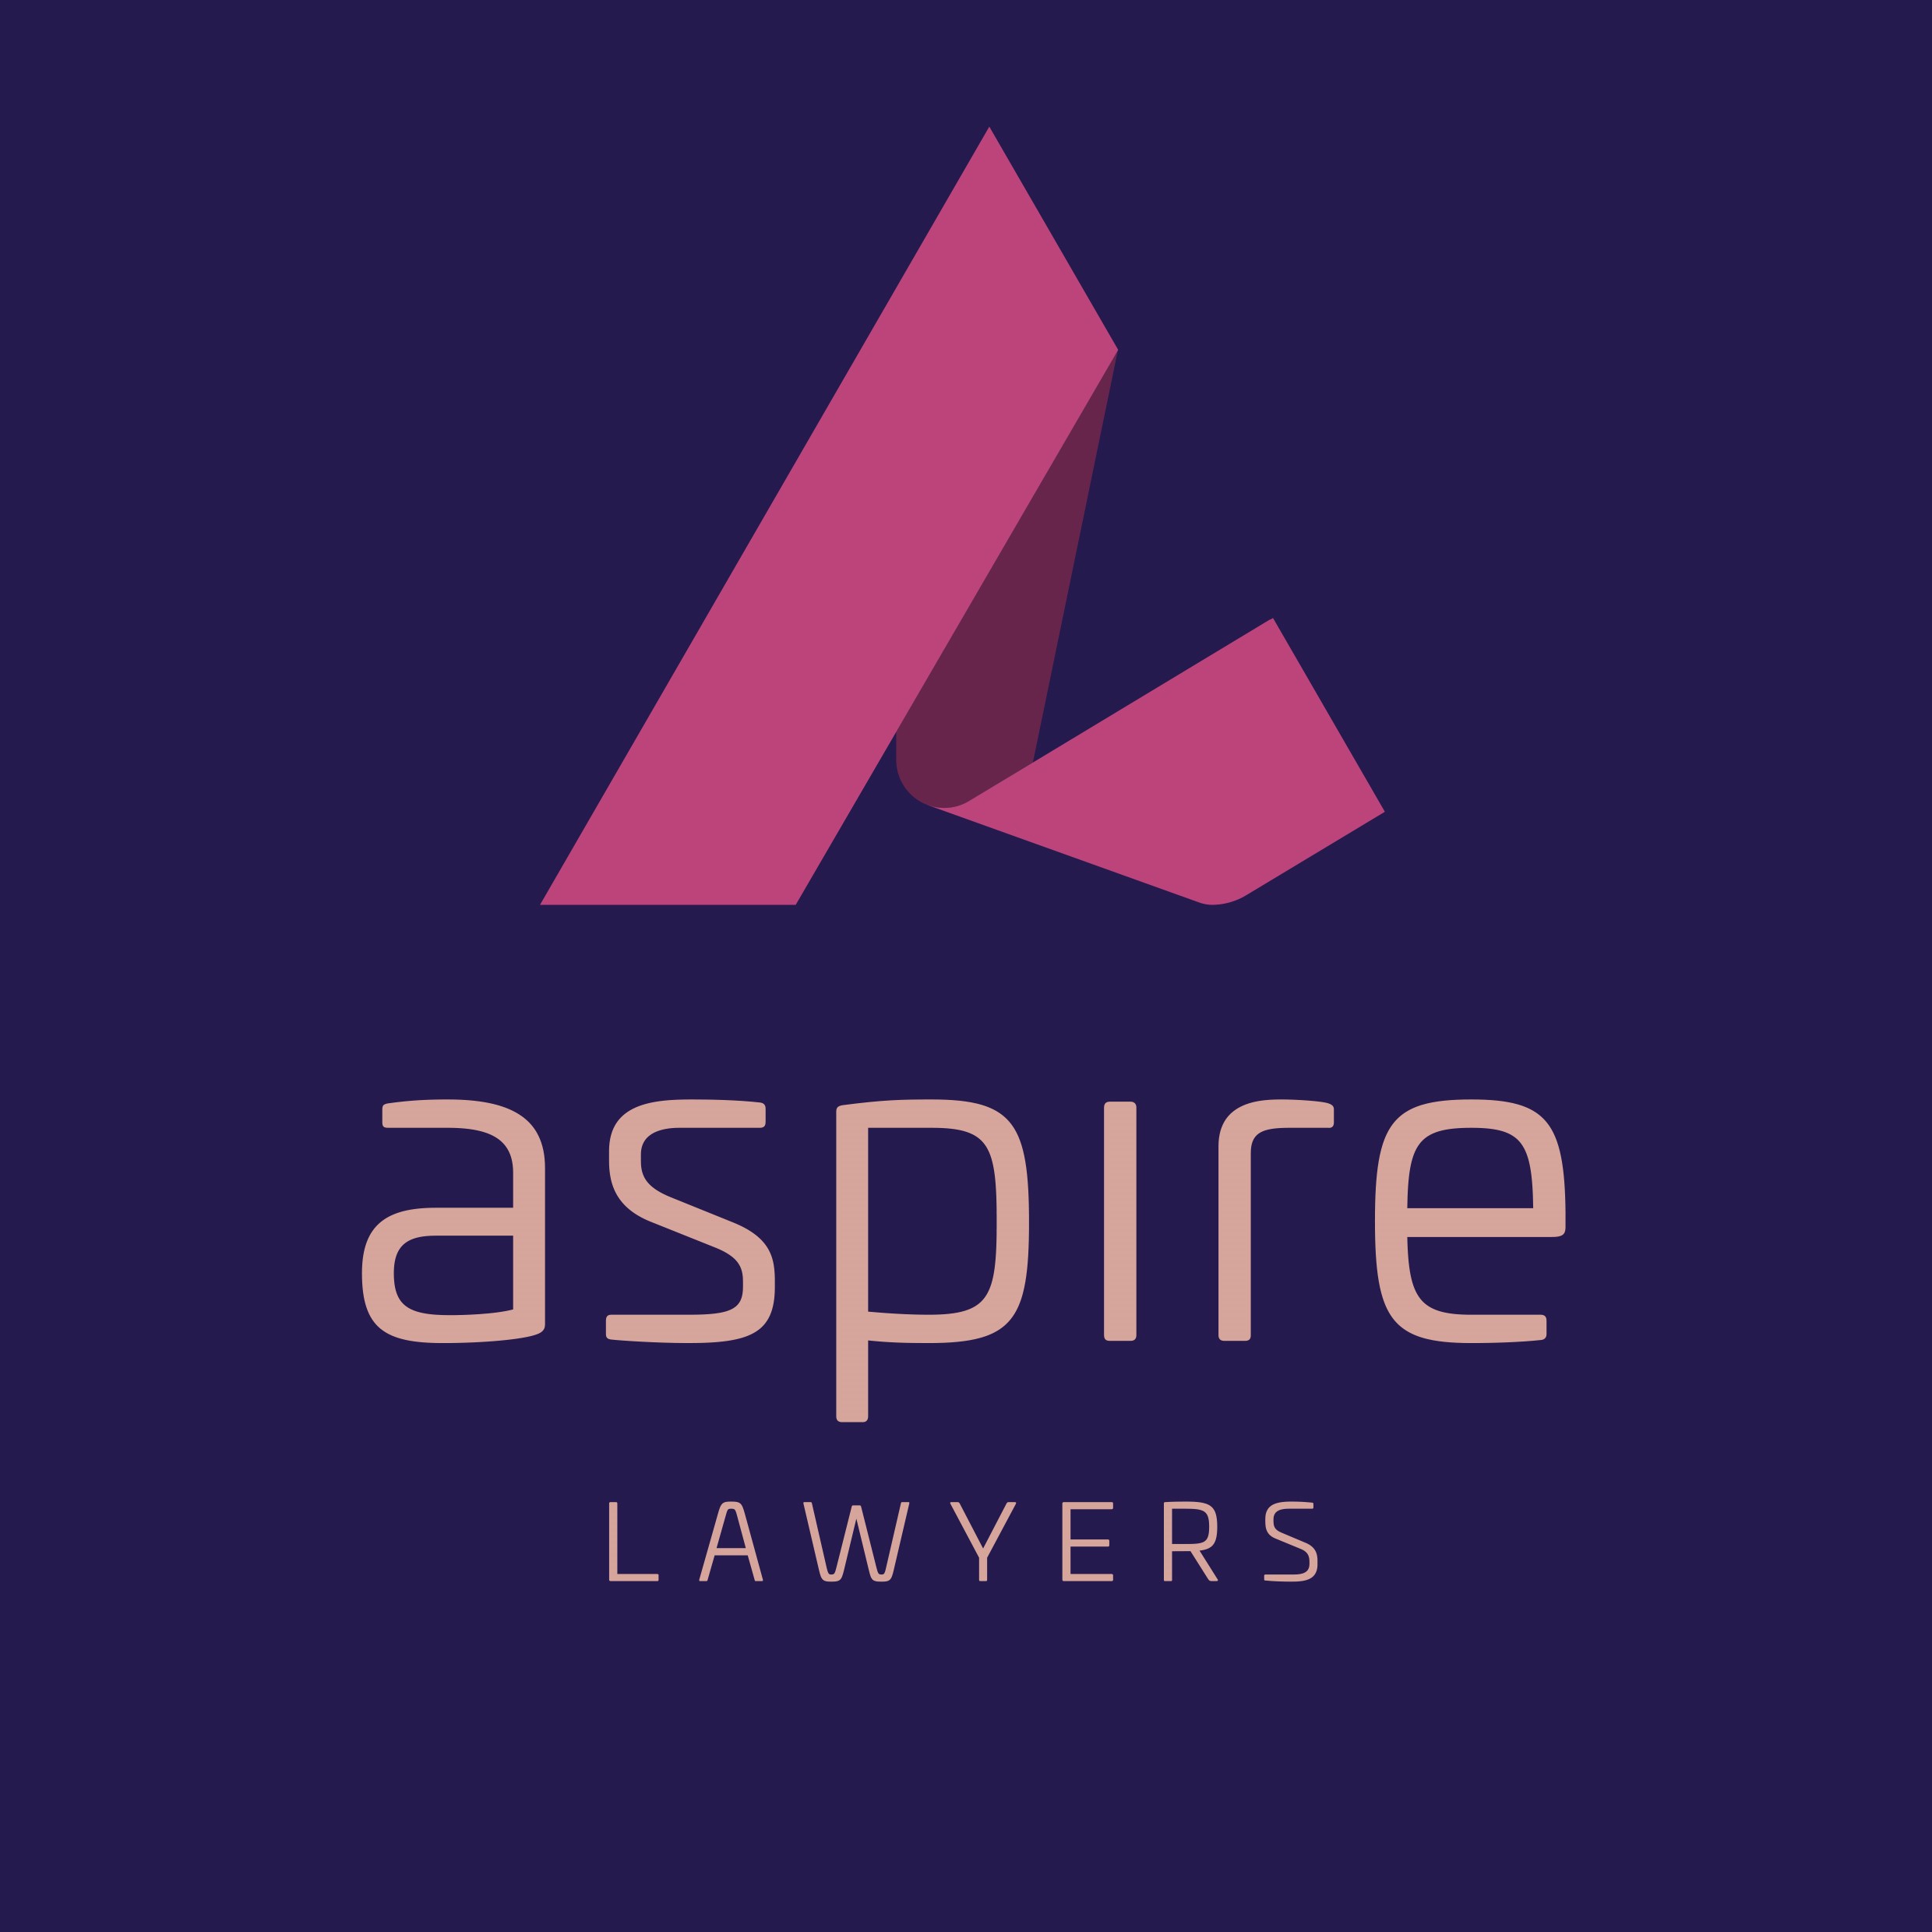 Aspire Lawyers